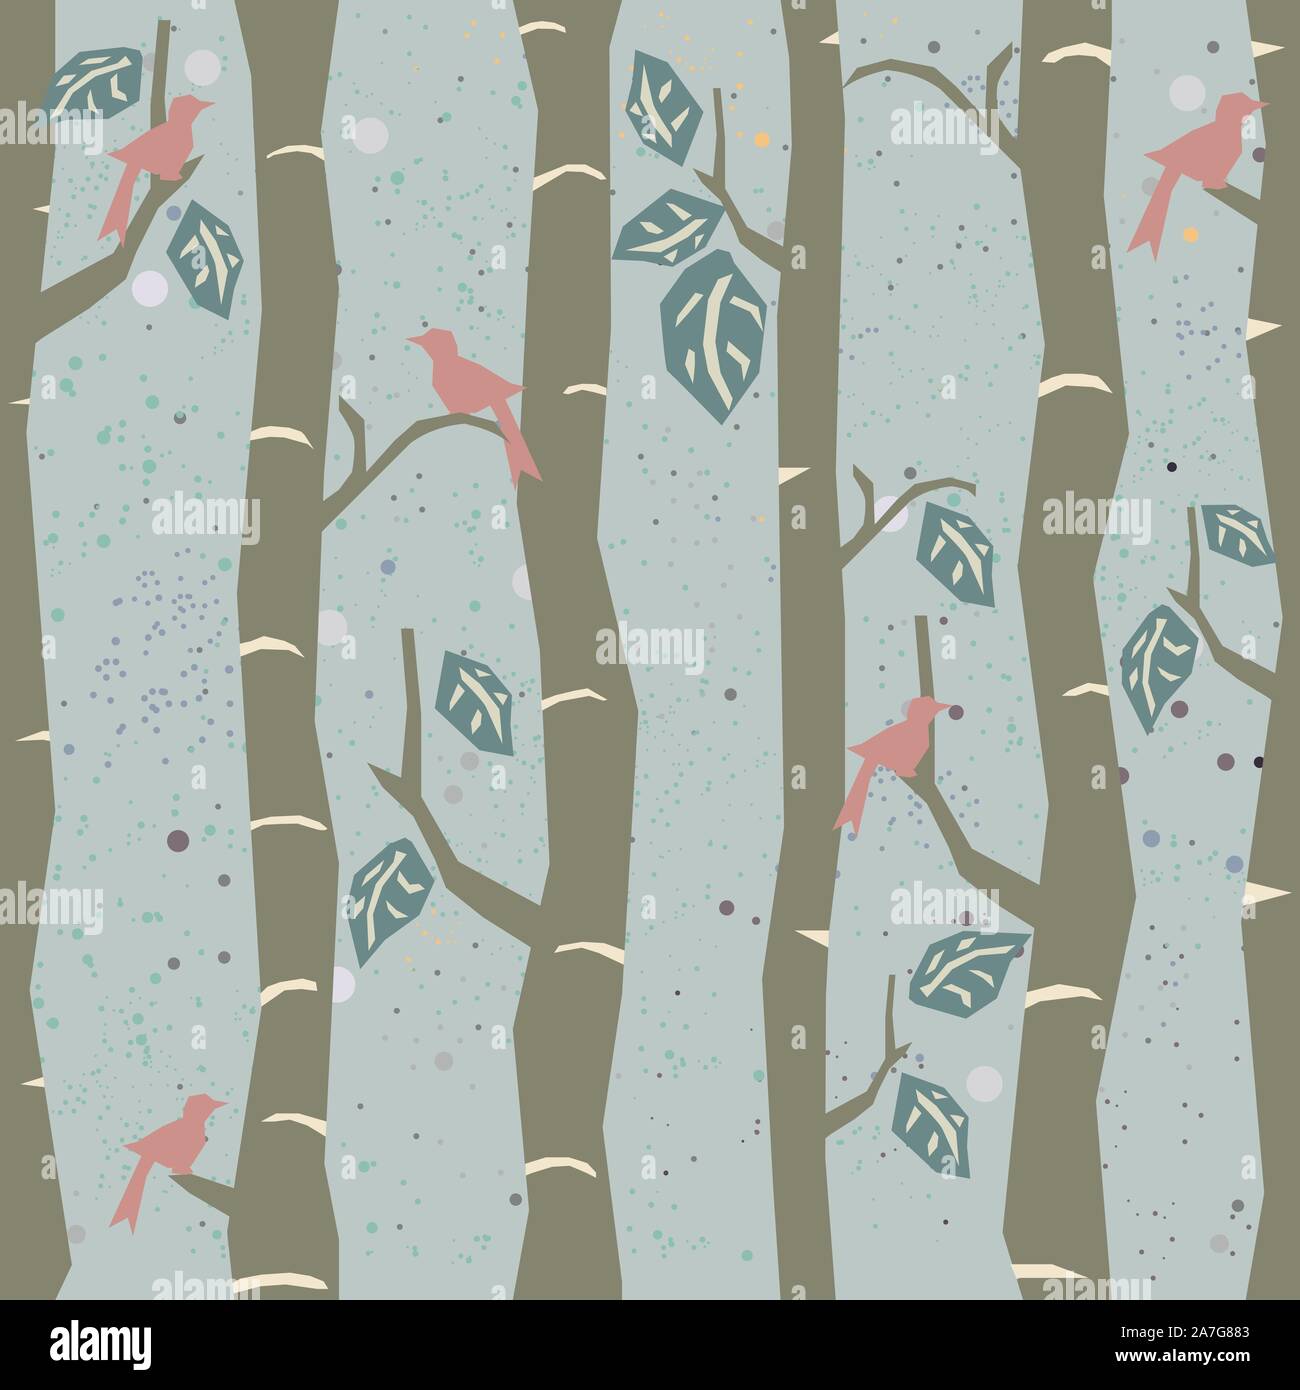 Nahtlose Baum Muster mit großen Vögel und Blätter. Vector Illustration. Stock Vektor